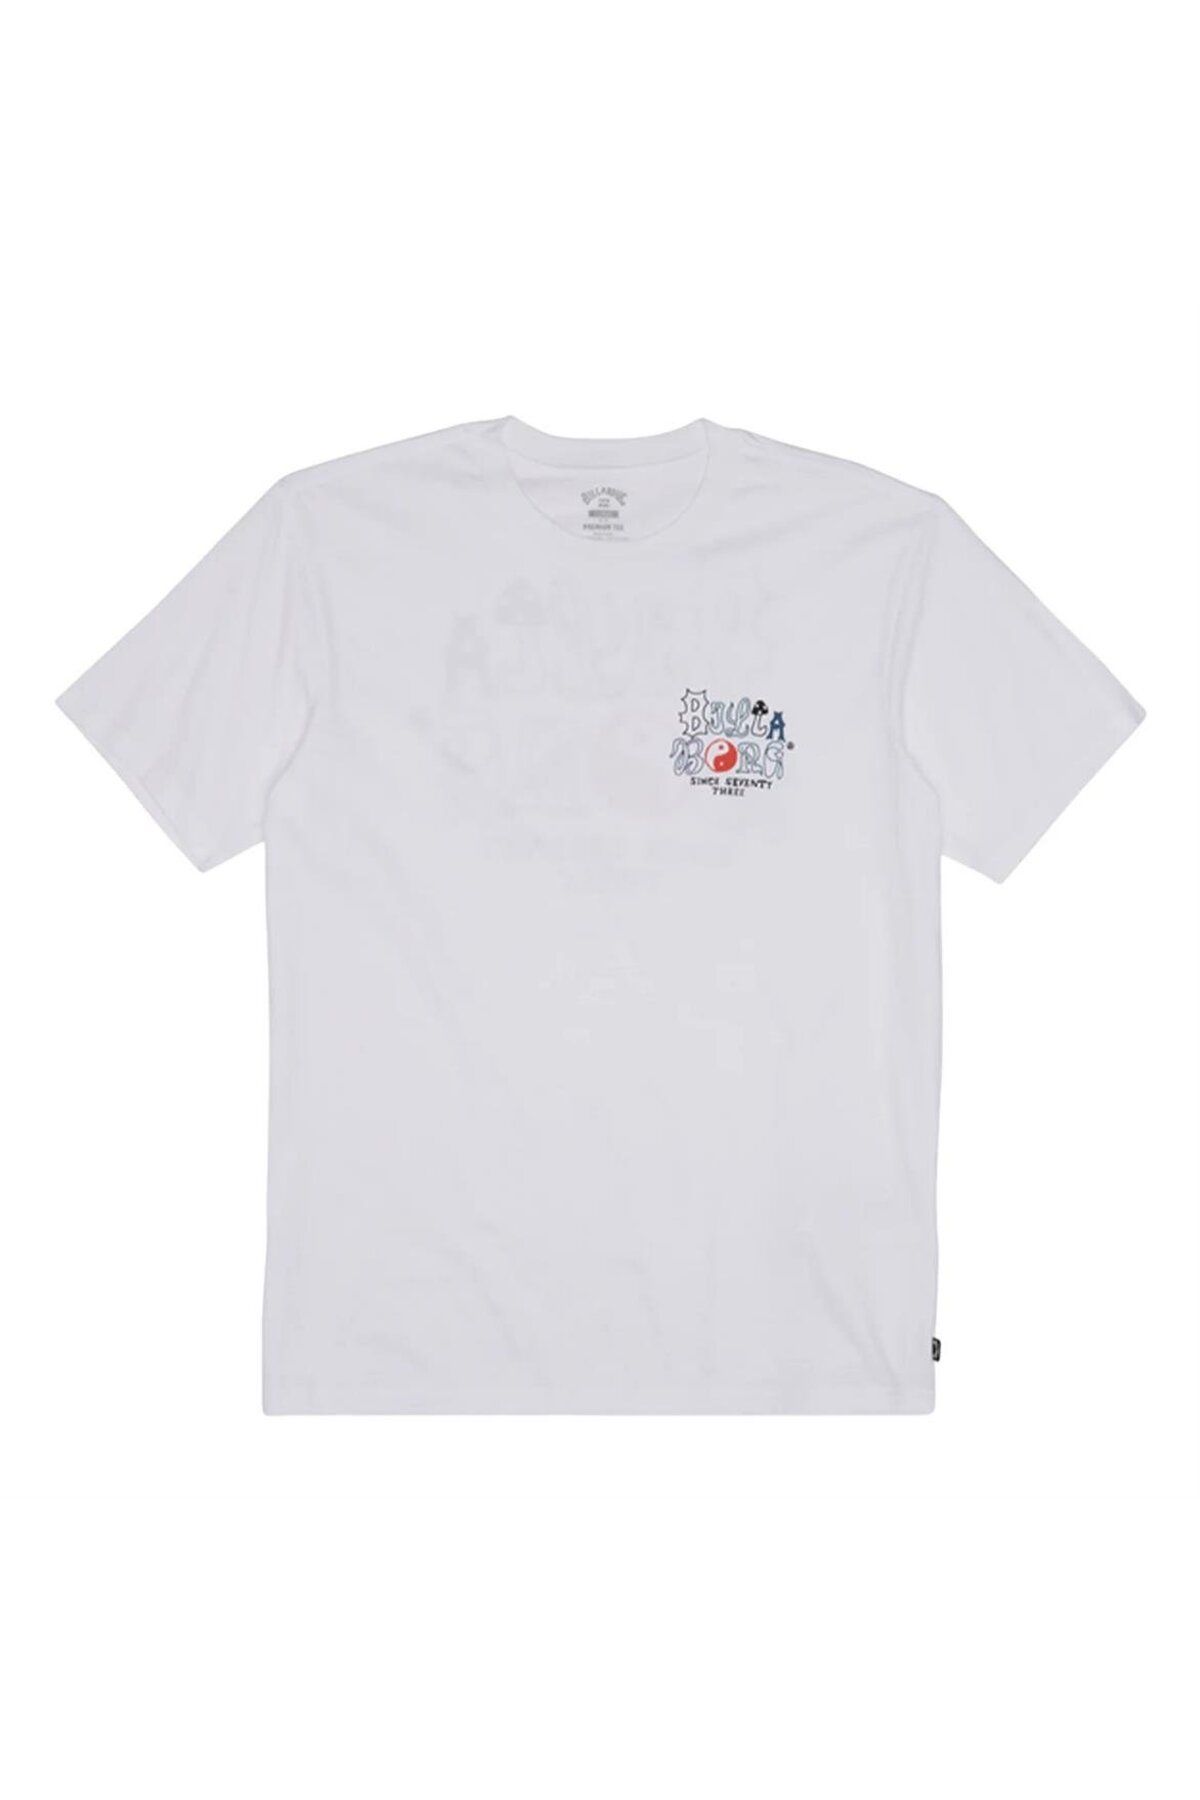 Billabong Billabong Worded Tees Beyaz Erkek T-shirt